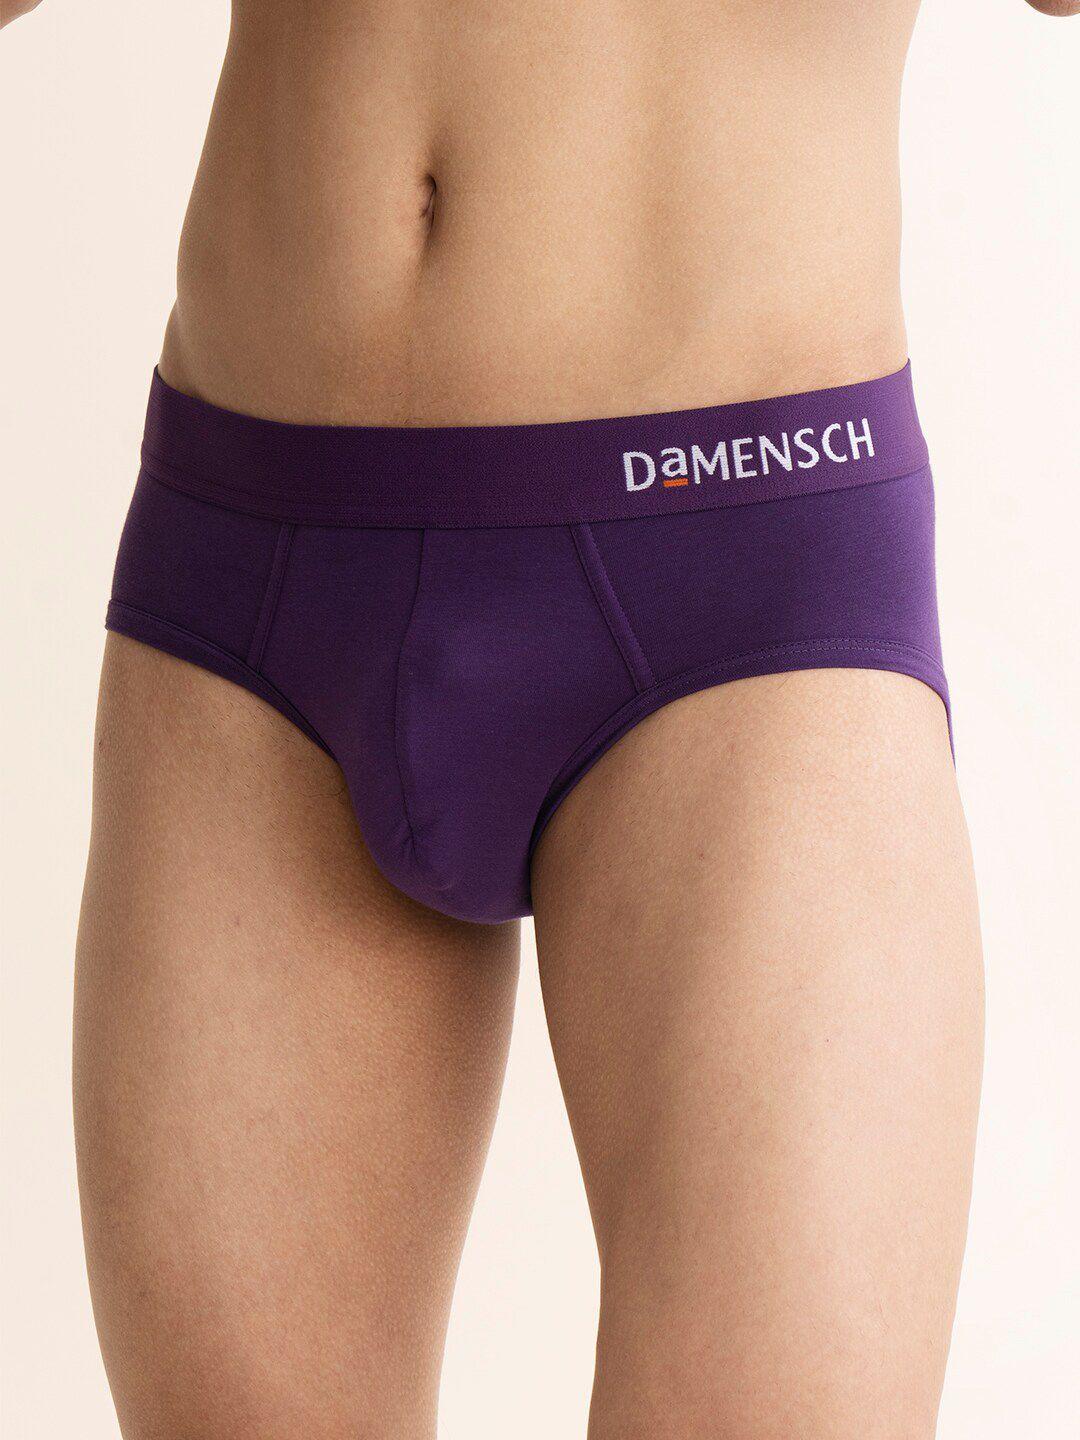 damensch-men-deo-soft-anti-odour-brief